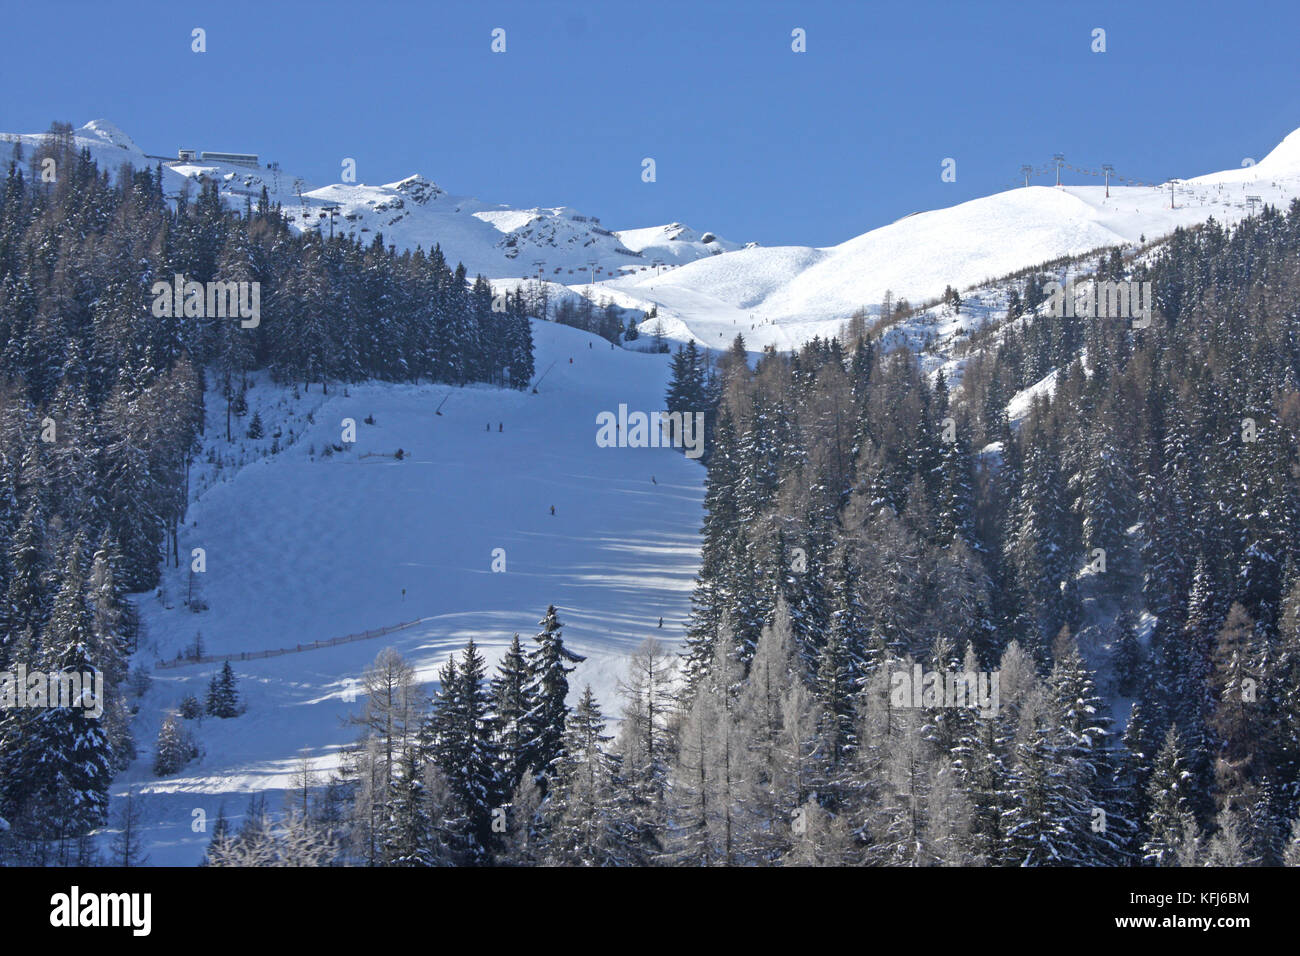 Axamer Lizum Skigebiet a Österreich Foto Stock